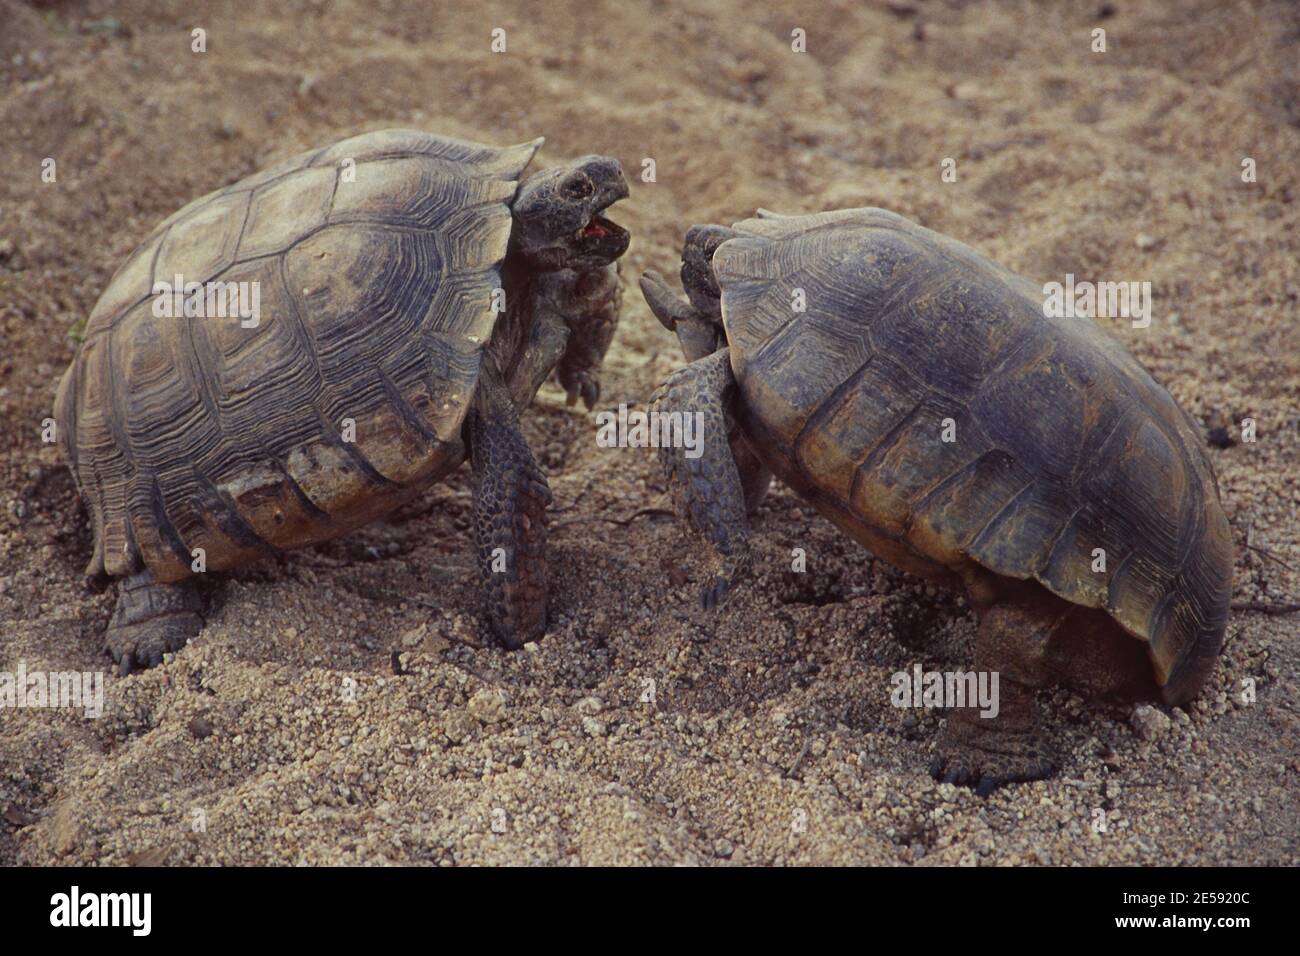 Two desert tortoises fighting at dusk in California's Joshua Tree National Park. Stock Photo